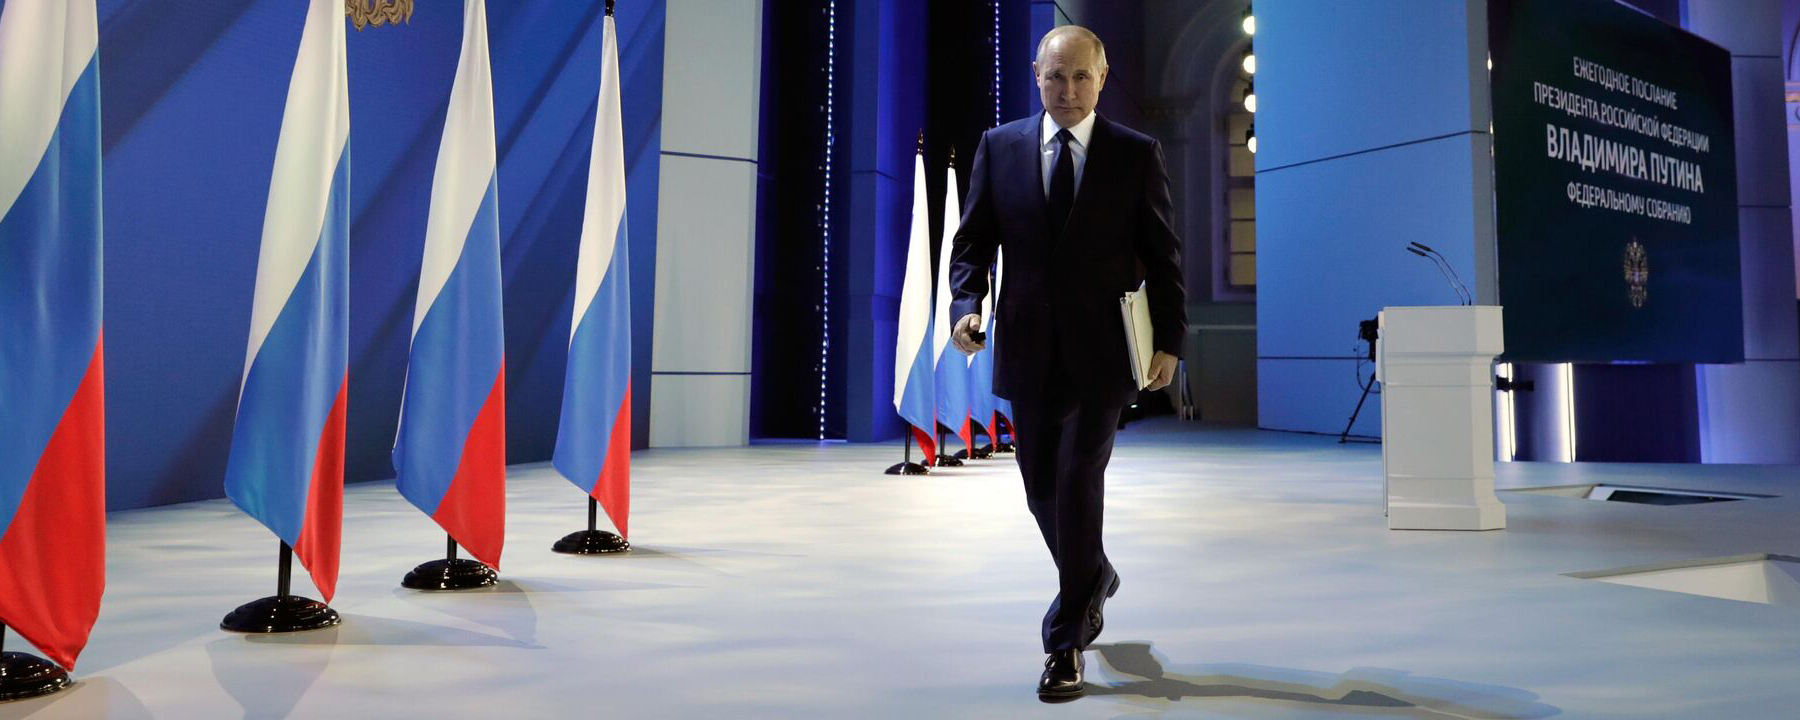 Послание Путина посмотрели на 3 млн человек больше, чем в 2021 году